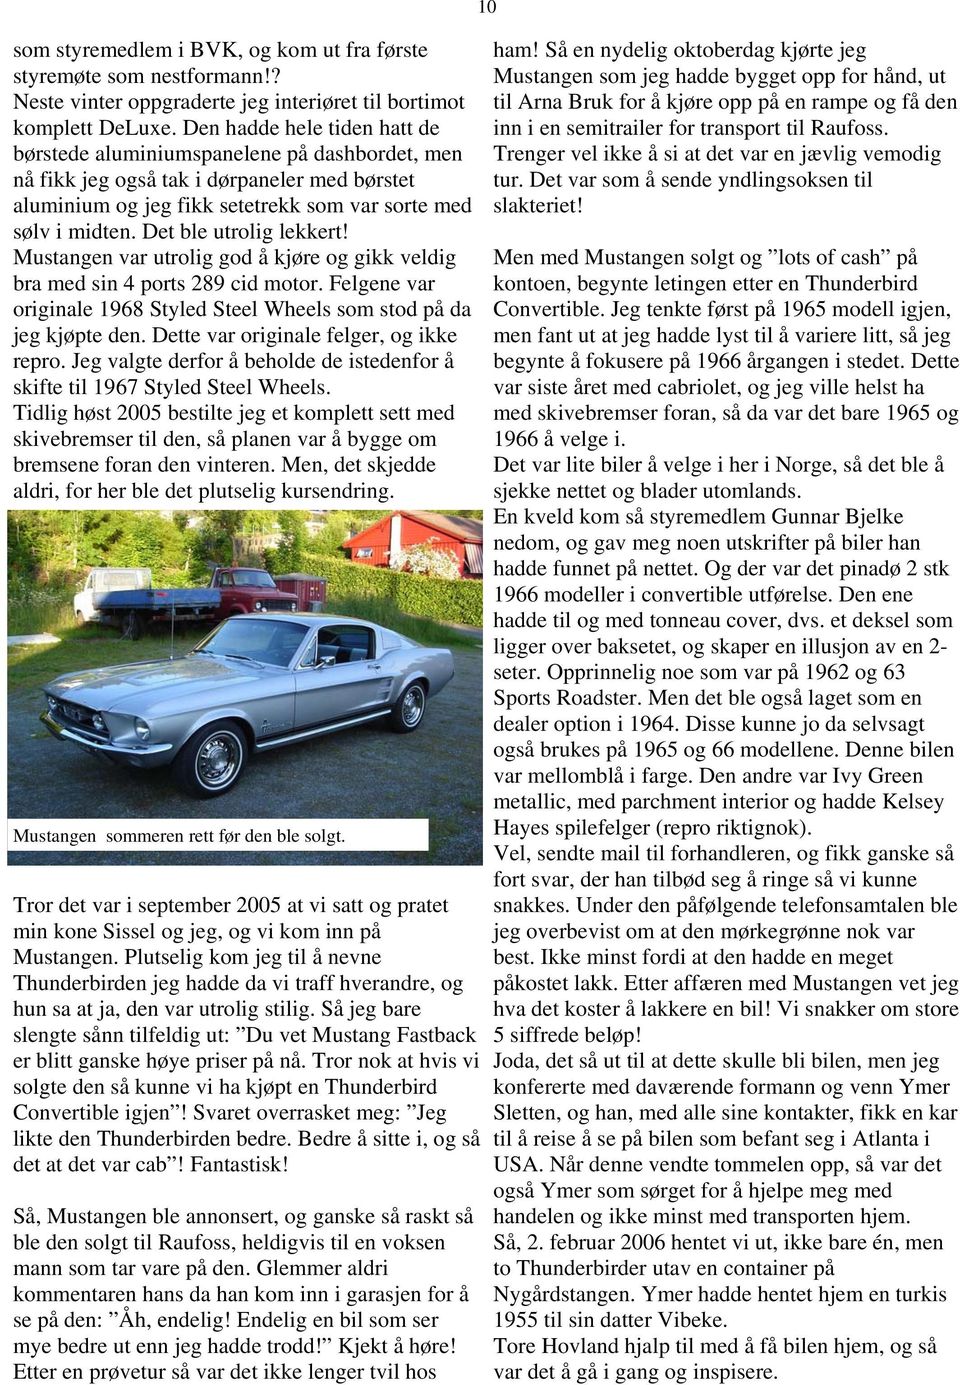 Det ble utrolig lekkert! Mustangen var utrolig god å kjøre og gikk veldig bra med sin 4 ports 289 cid motor. Felgene var originale 1968 Styled Steel Wheels som stod på da jeg kjøpte den.